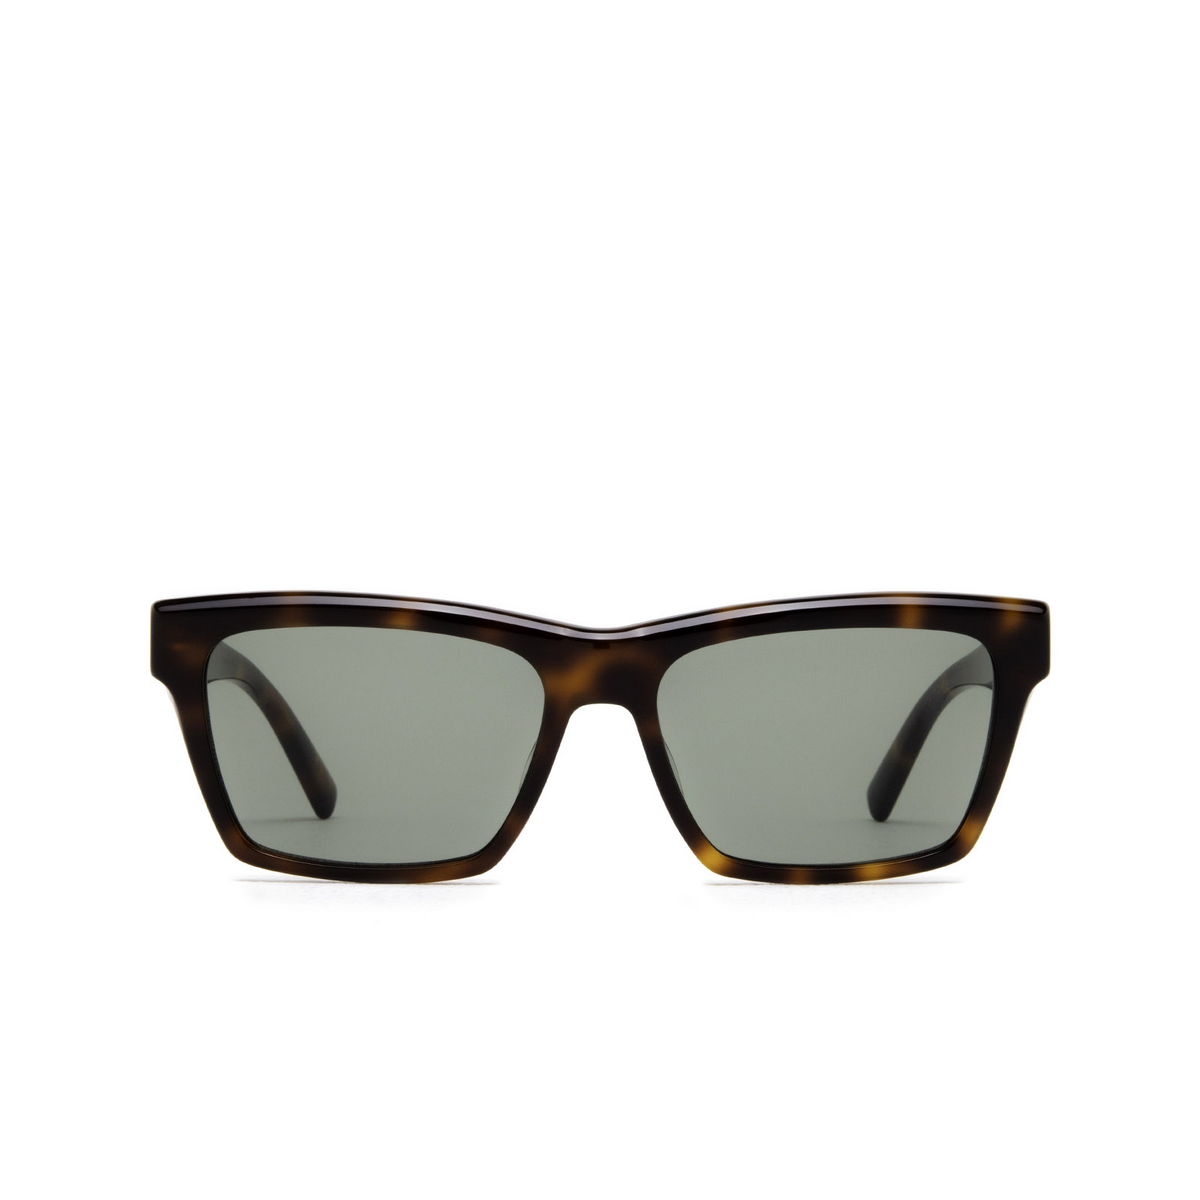 Saint Laurent® Rectangle Sunglasses: SL M104 color Havana 003 - front view.